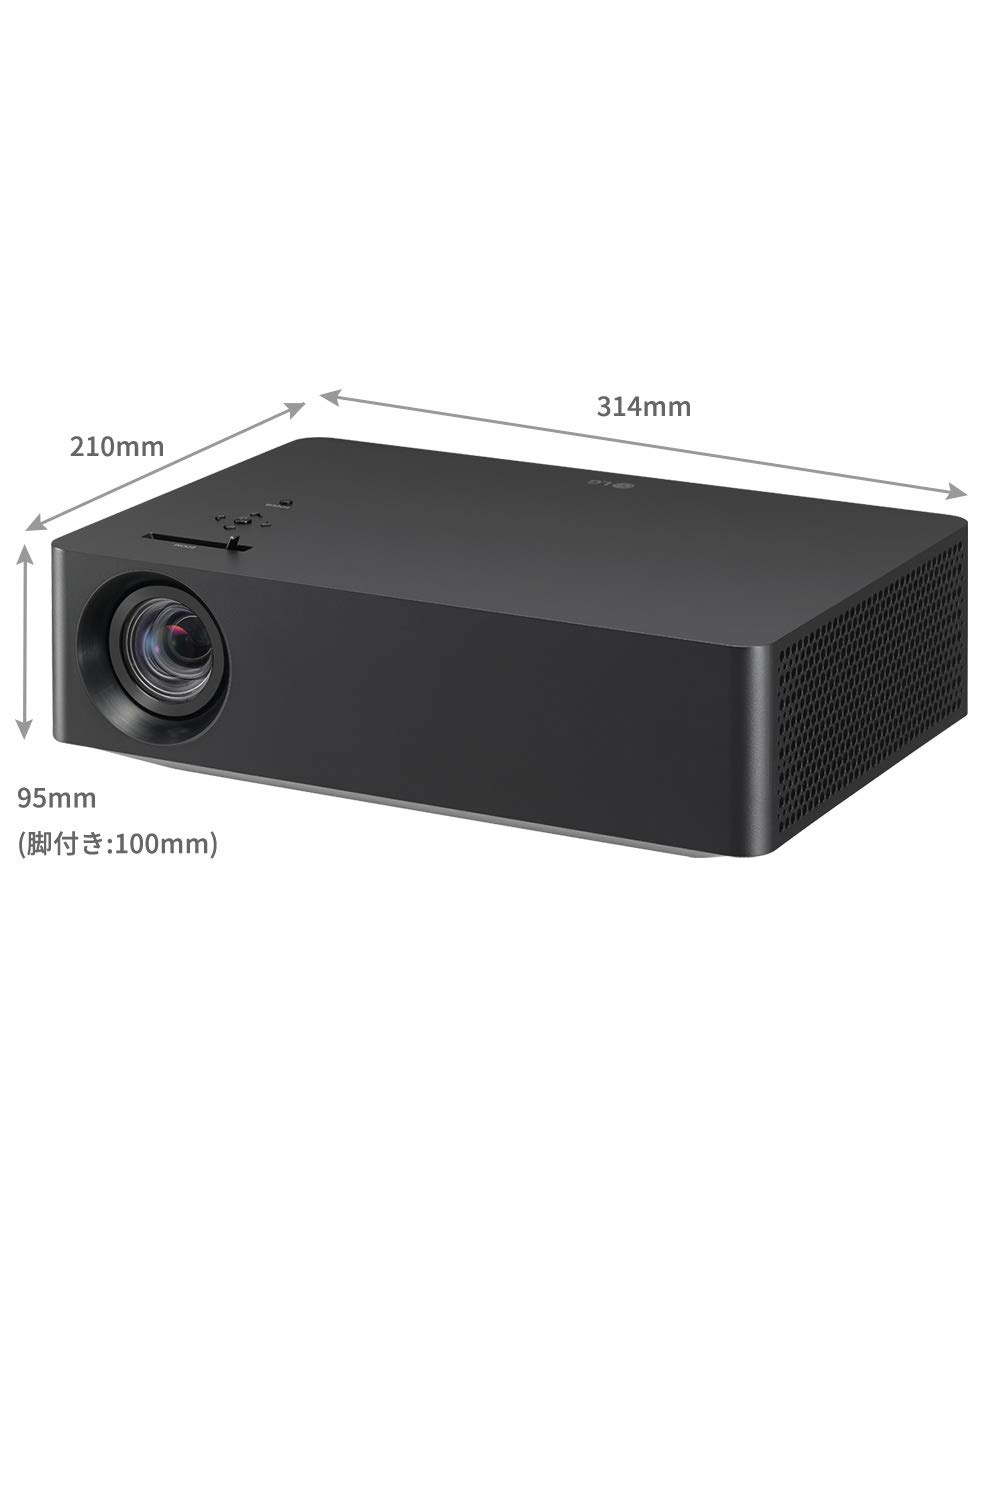 ランキング第1位 amanLG 4K LEDプロジェクター 1,500lm HDR対応 Bluetooth対応 約3.2kg webOS  Netflix,Prime Video等対応 寿命約30,000時間 HU70LS